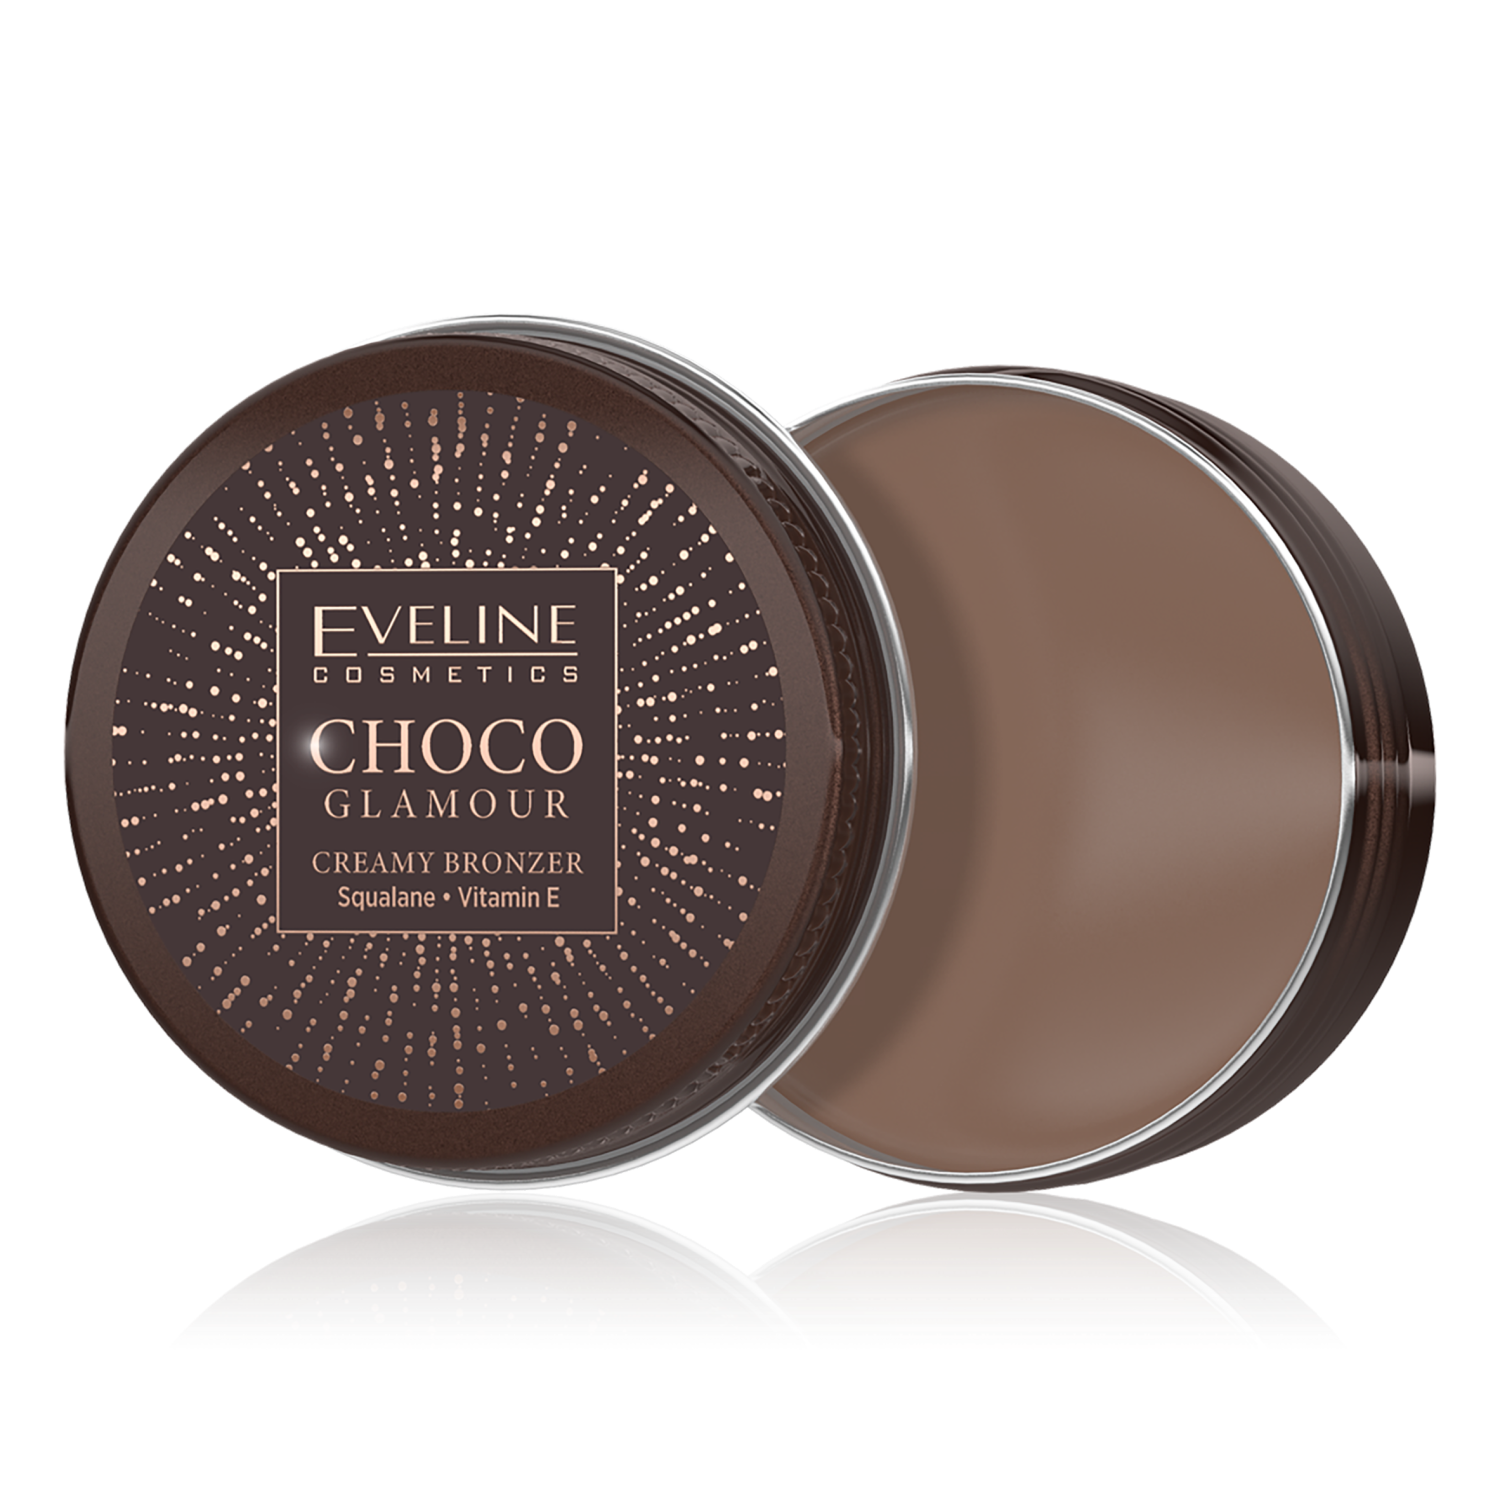 Легкий кремовый бронзатор для контурной пластики лица 02 Eveline Cosmetics Choco Glamour, 20 гр